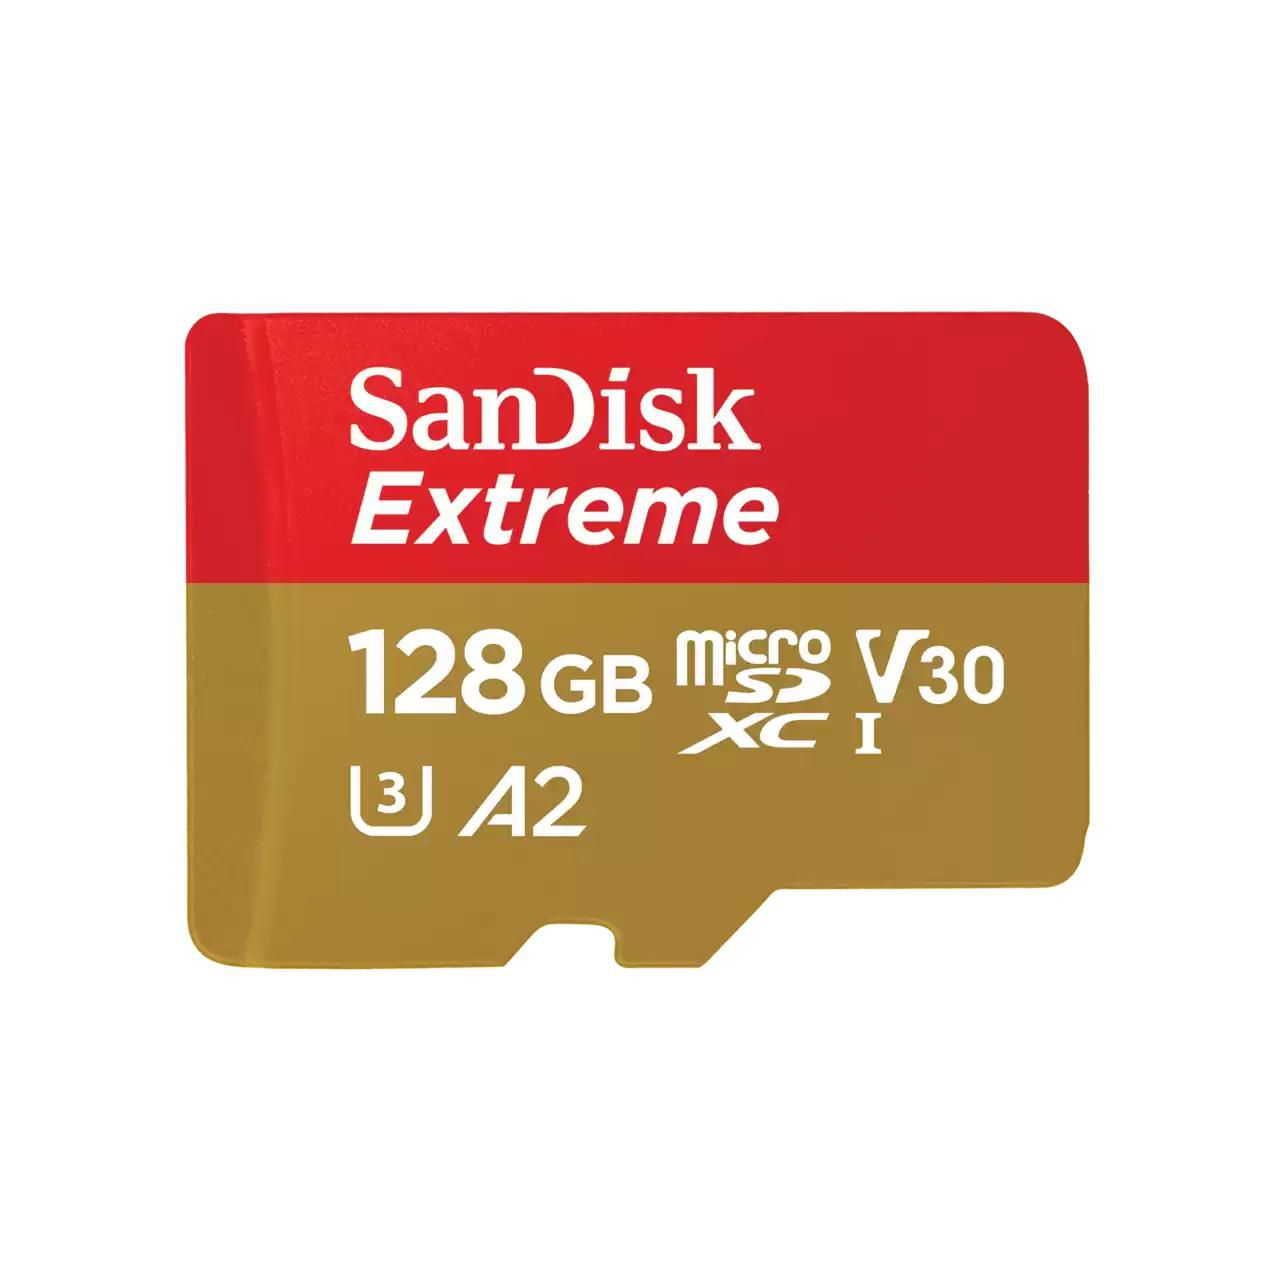 SANDISK Extreme 128 GB microSDXC